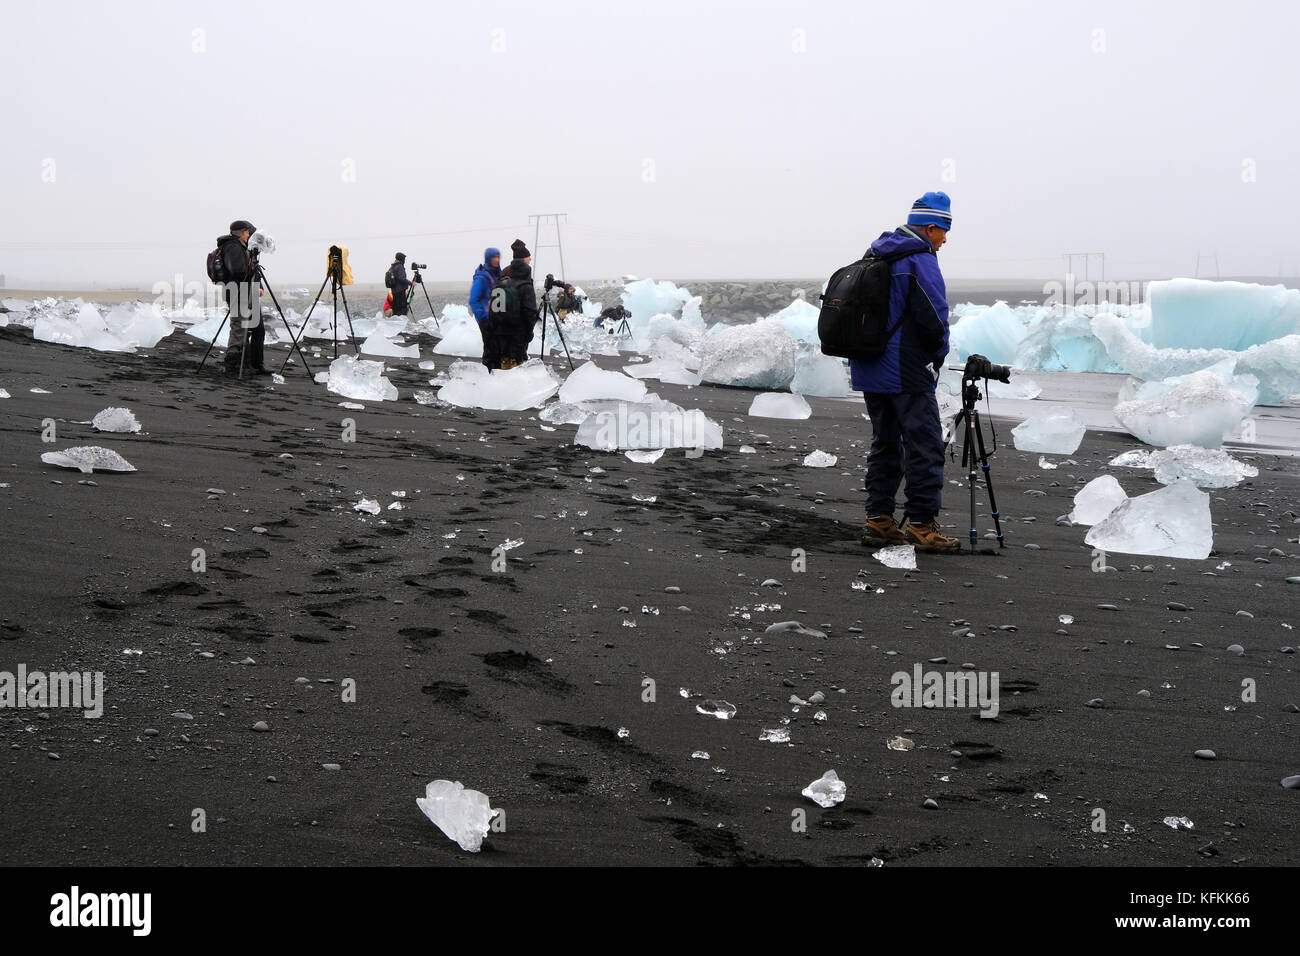 Les photographes en tournée photo avec des appareils photo et des trépieds debout et photographiant des icebergs se sont délassés sur la plage de sable noir de diamants à Jokulsarlon Islande Banque D'Images